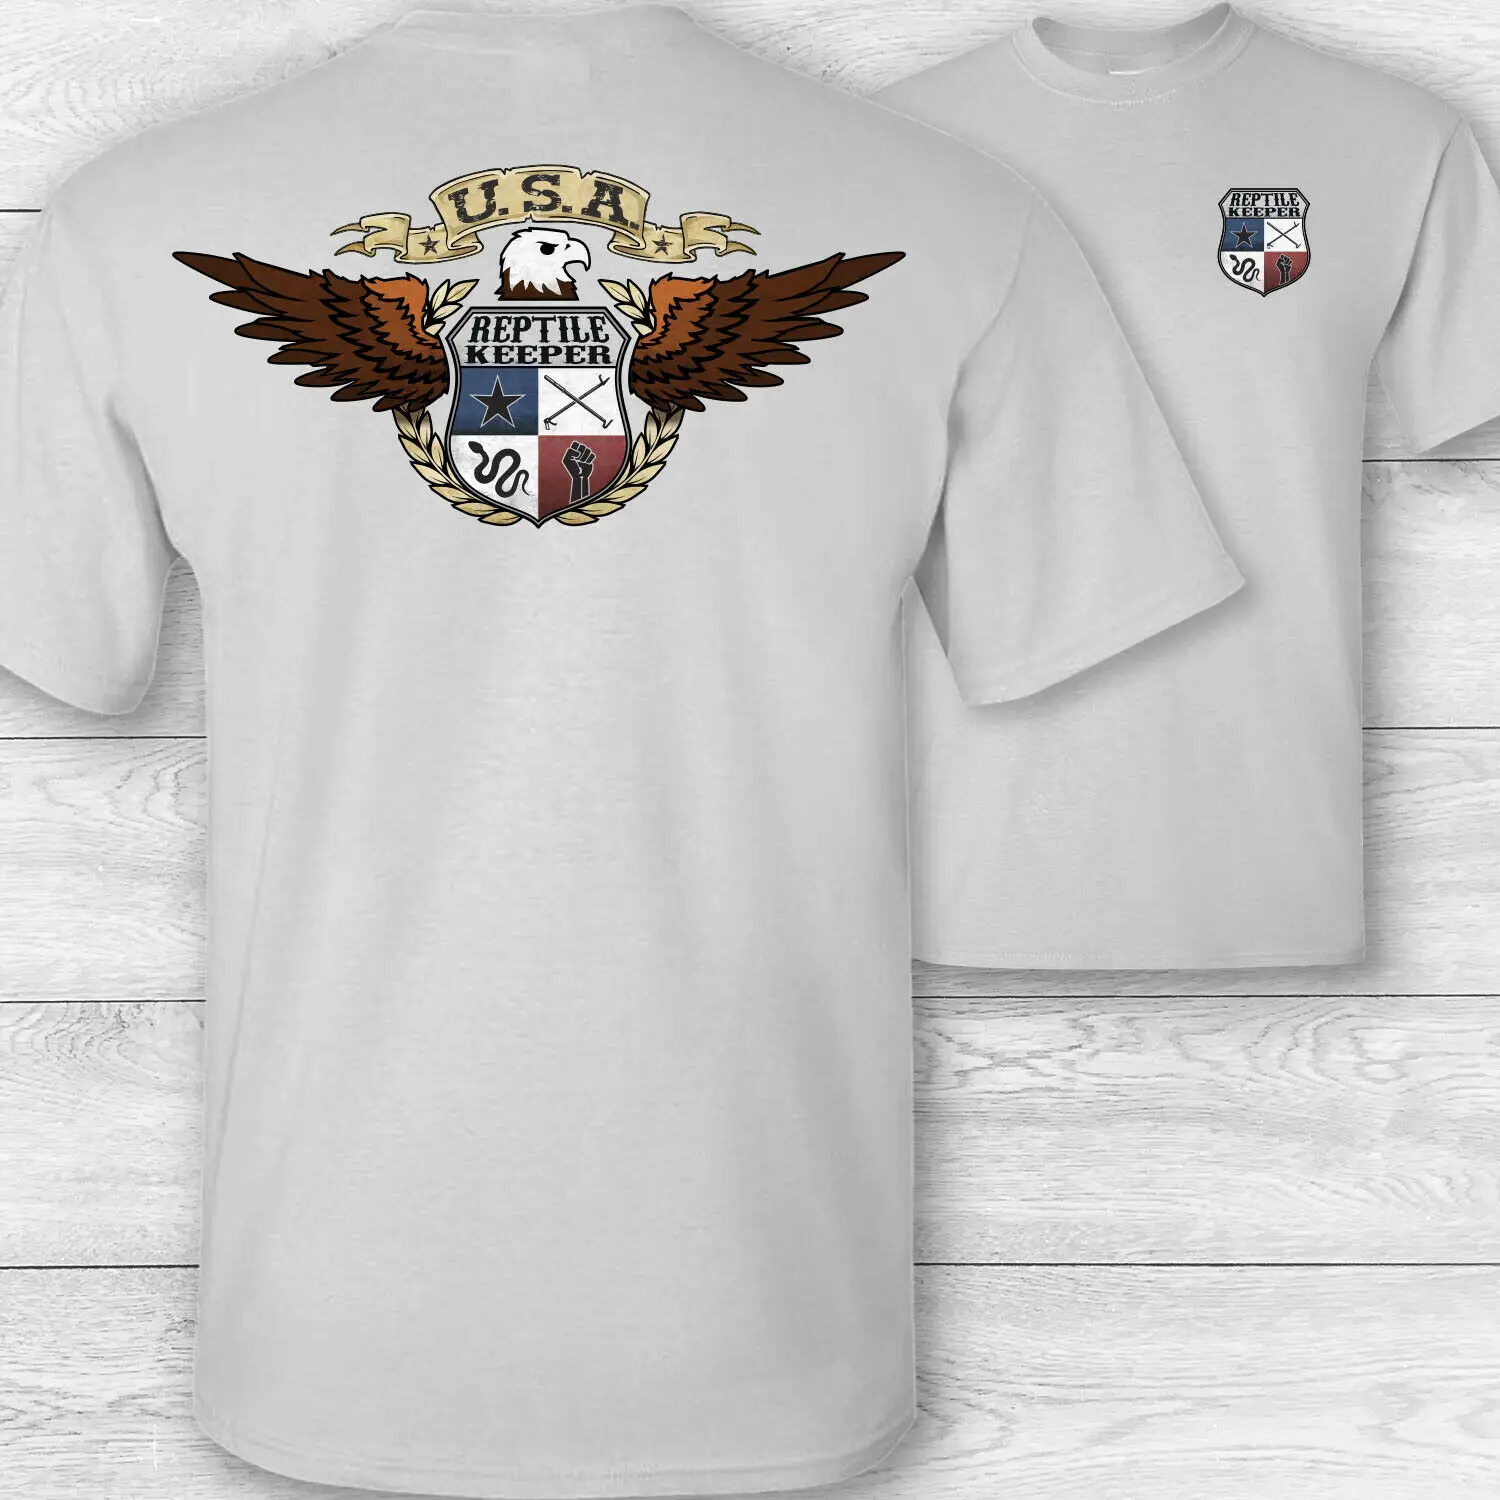 American Eagle Reptiles Portero Camiseta - USA Patriótica de Reptiles Controlador T-shirt para Hombre 0